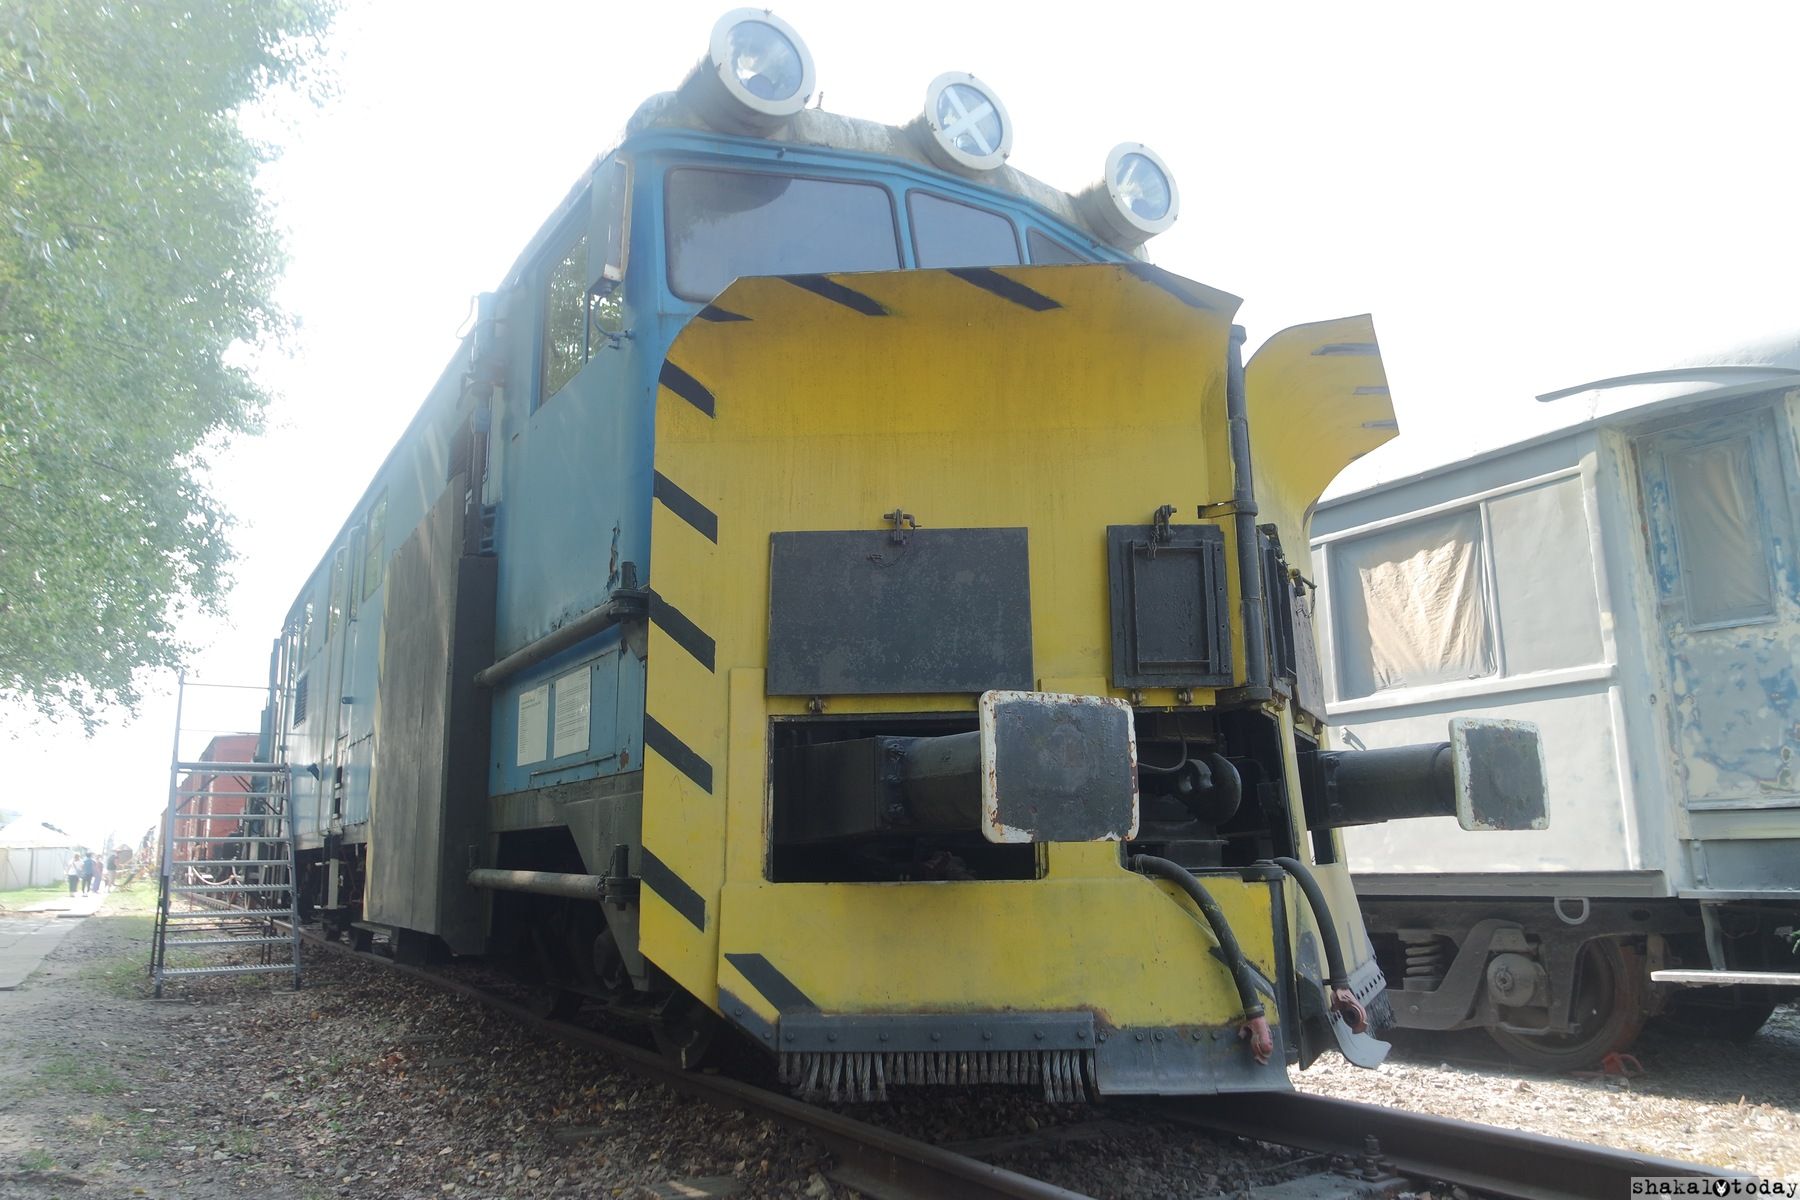 Trains-Shakal-Today-0053.JPG